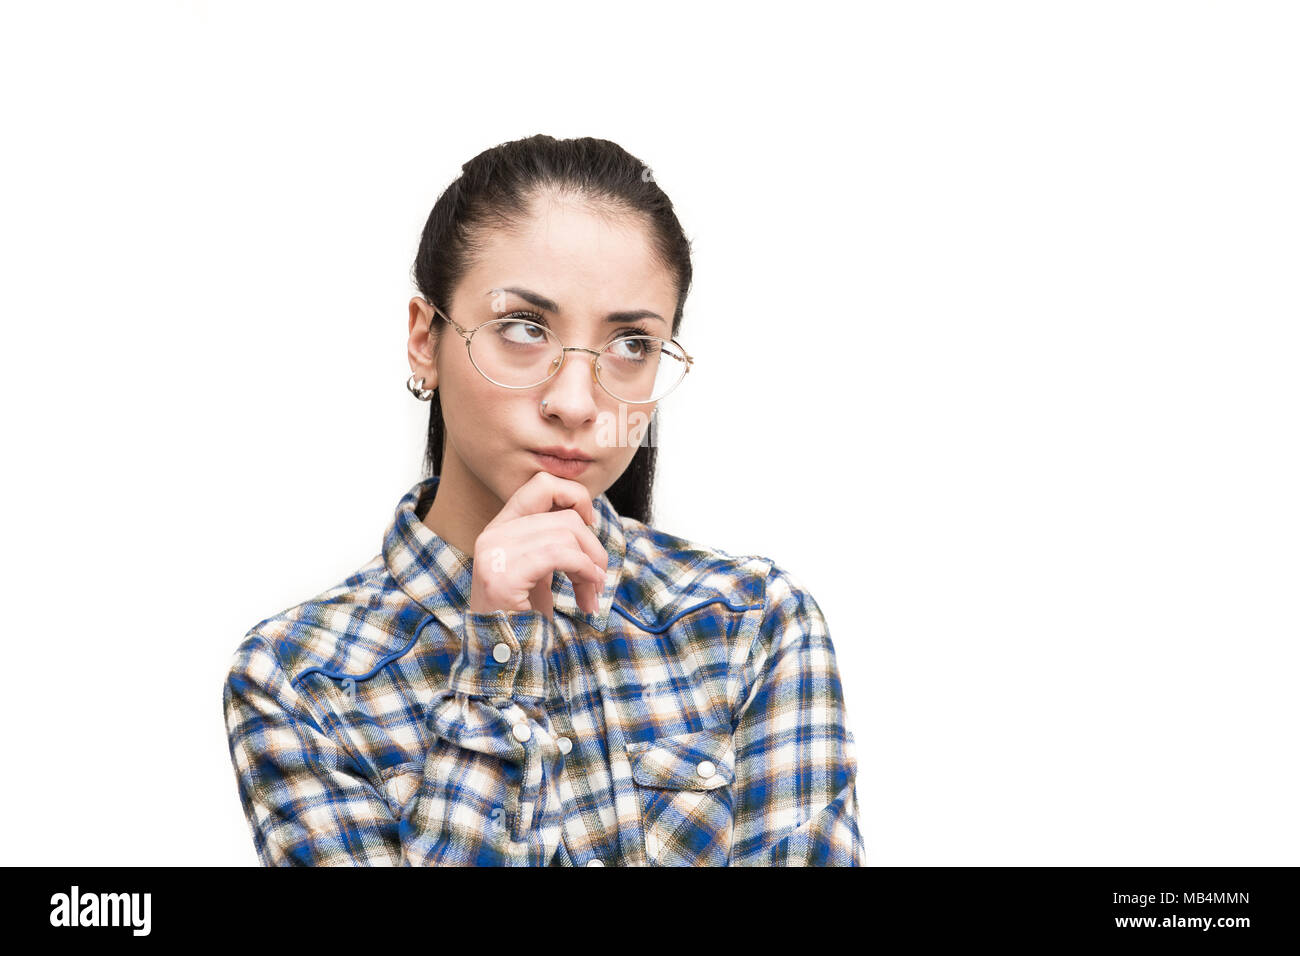 Unsichere alternative jugendlich Mädchen mit Brille im blauen Hemd sah zweifelnd Finger auf Kinn Stockfoto